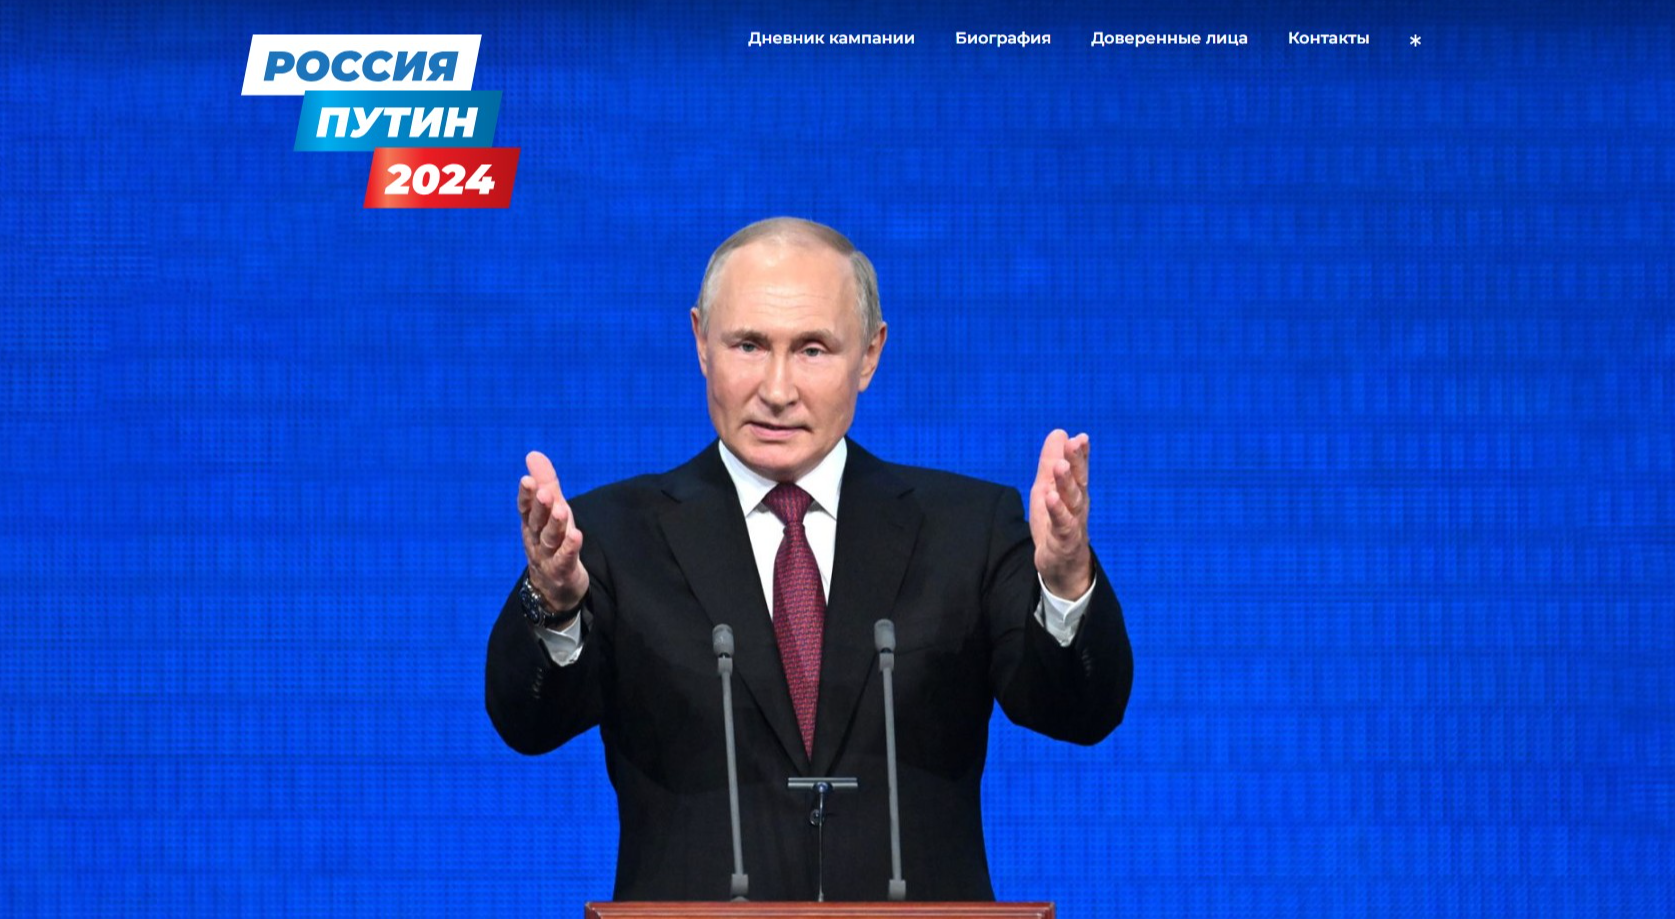 Российские IT-специалисты создали сайт кандидата на должность Президента РФ Владимира Путина